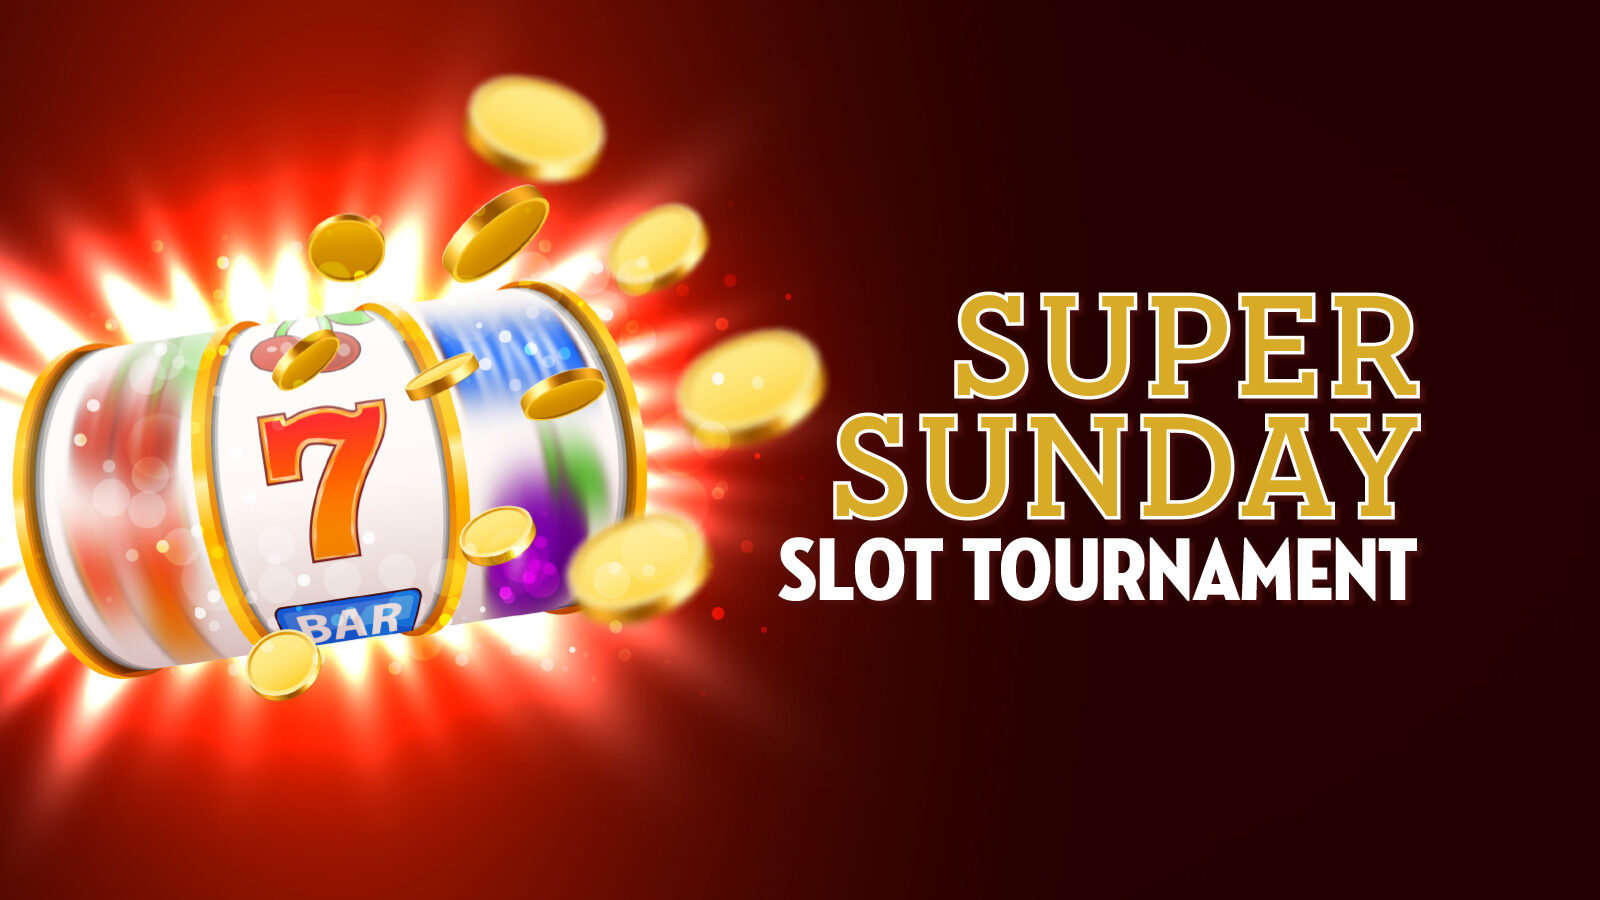 Super Sunday Slot Tournament